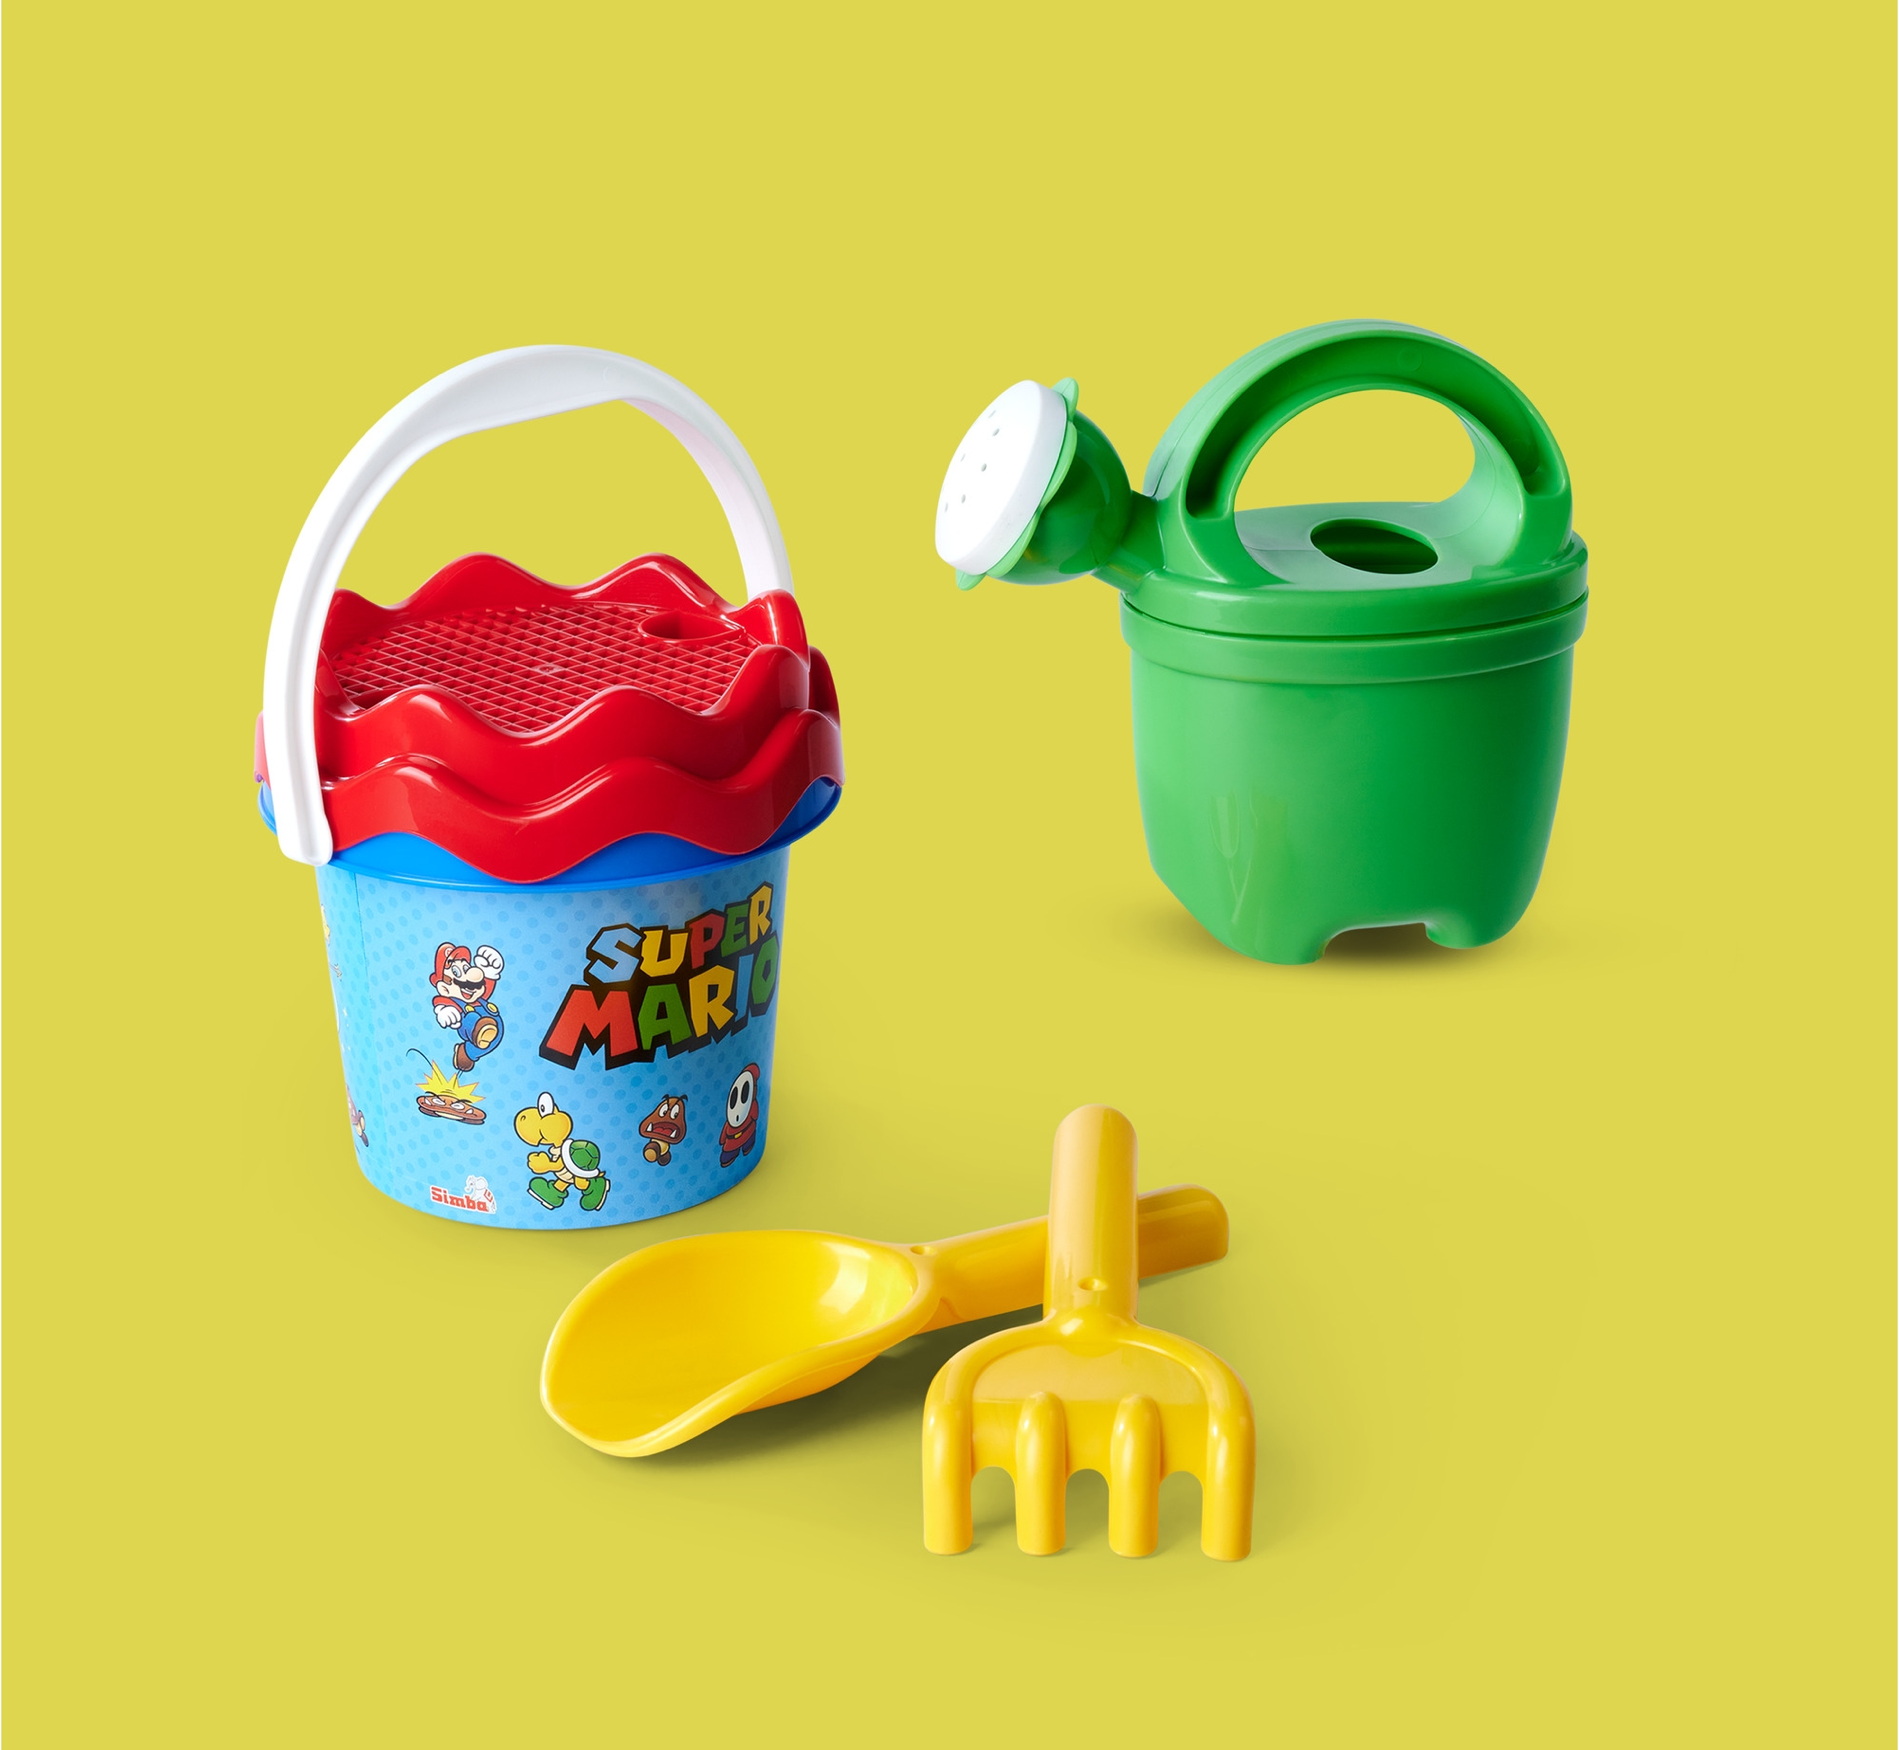 Spielwaren Express - Simba Outdoor Spielzeug Sand & Strand  Baby-Eimergarnitur Super Mario 109234593